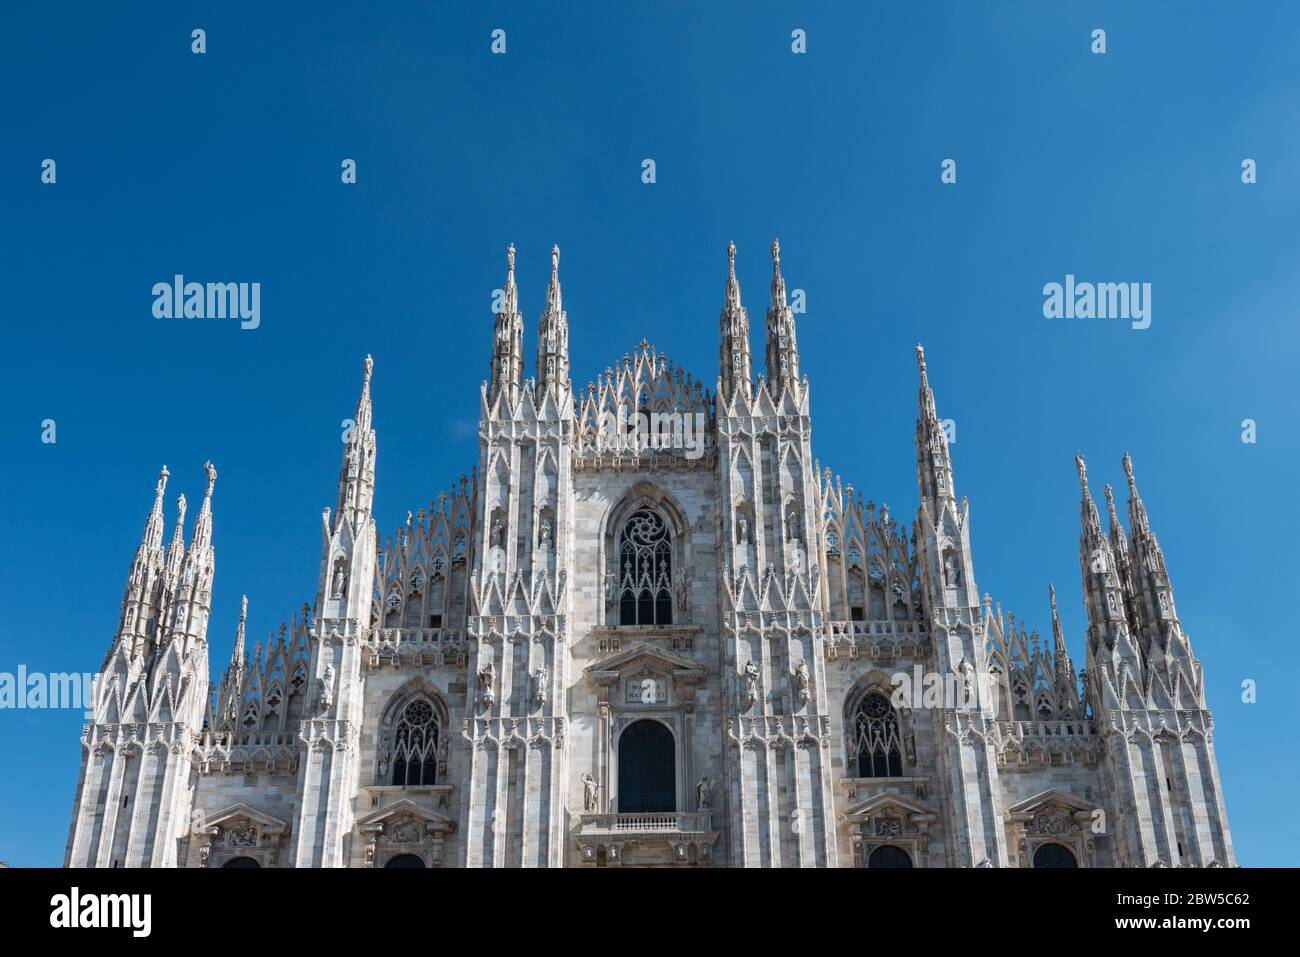 Imagen horizontal de la parte superior del Duomo di Milano, una importante catedral católica de Milán, Italia. Foto de stock